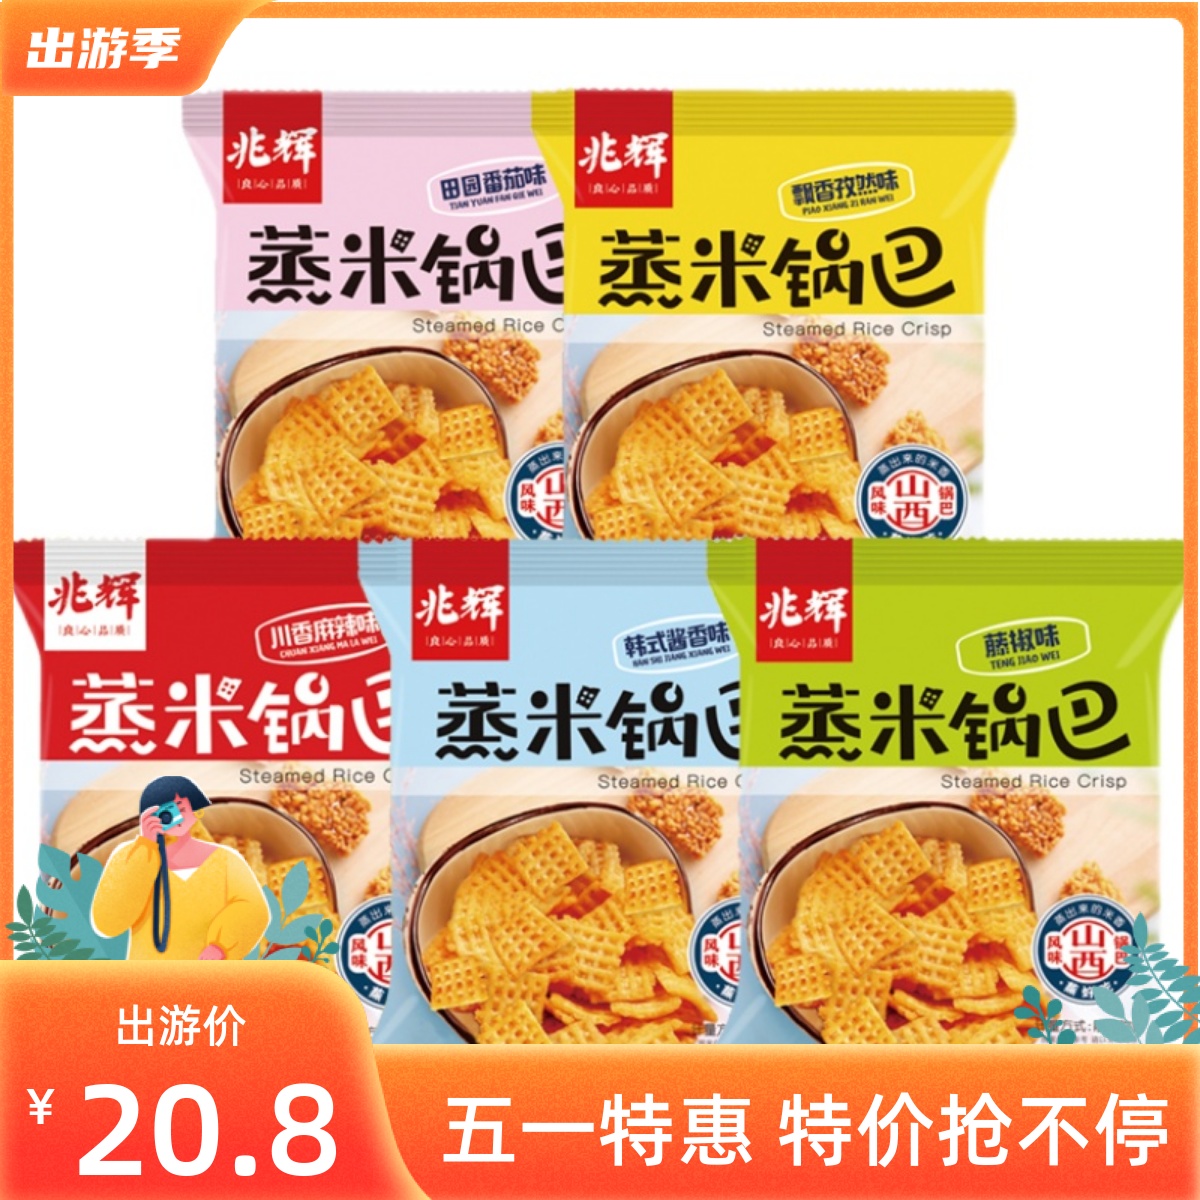 兆辉蒸米锅巴手抓包25gX30包装独立小包装休闲营养食品美味混合